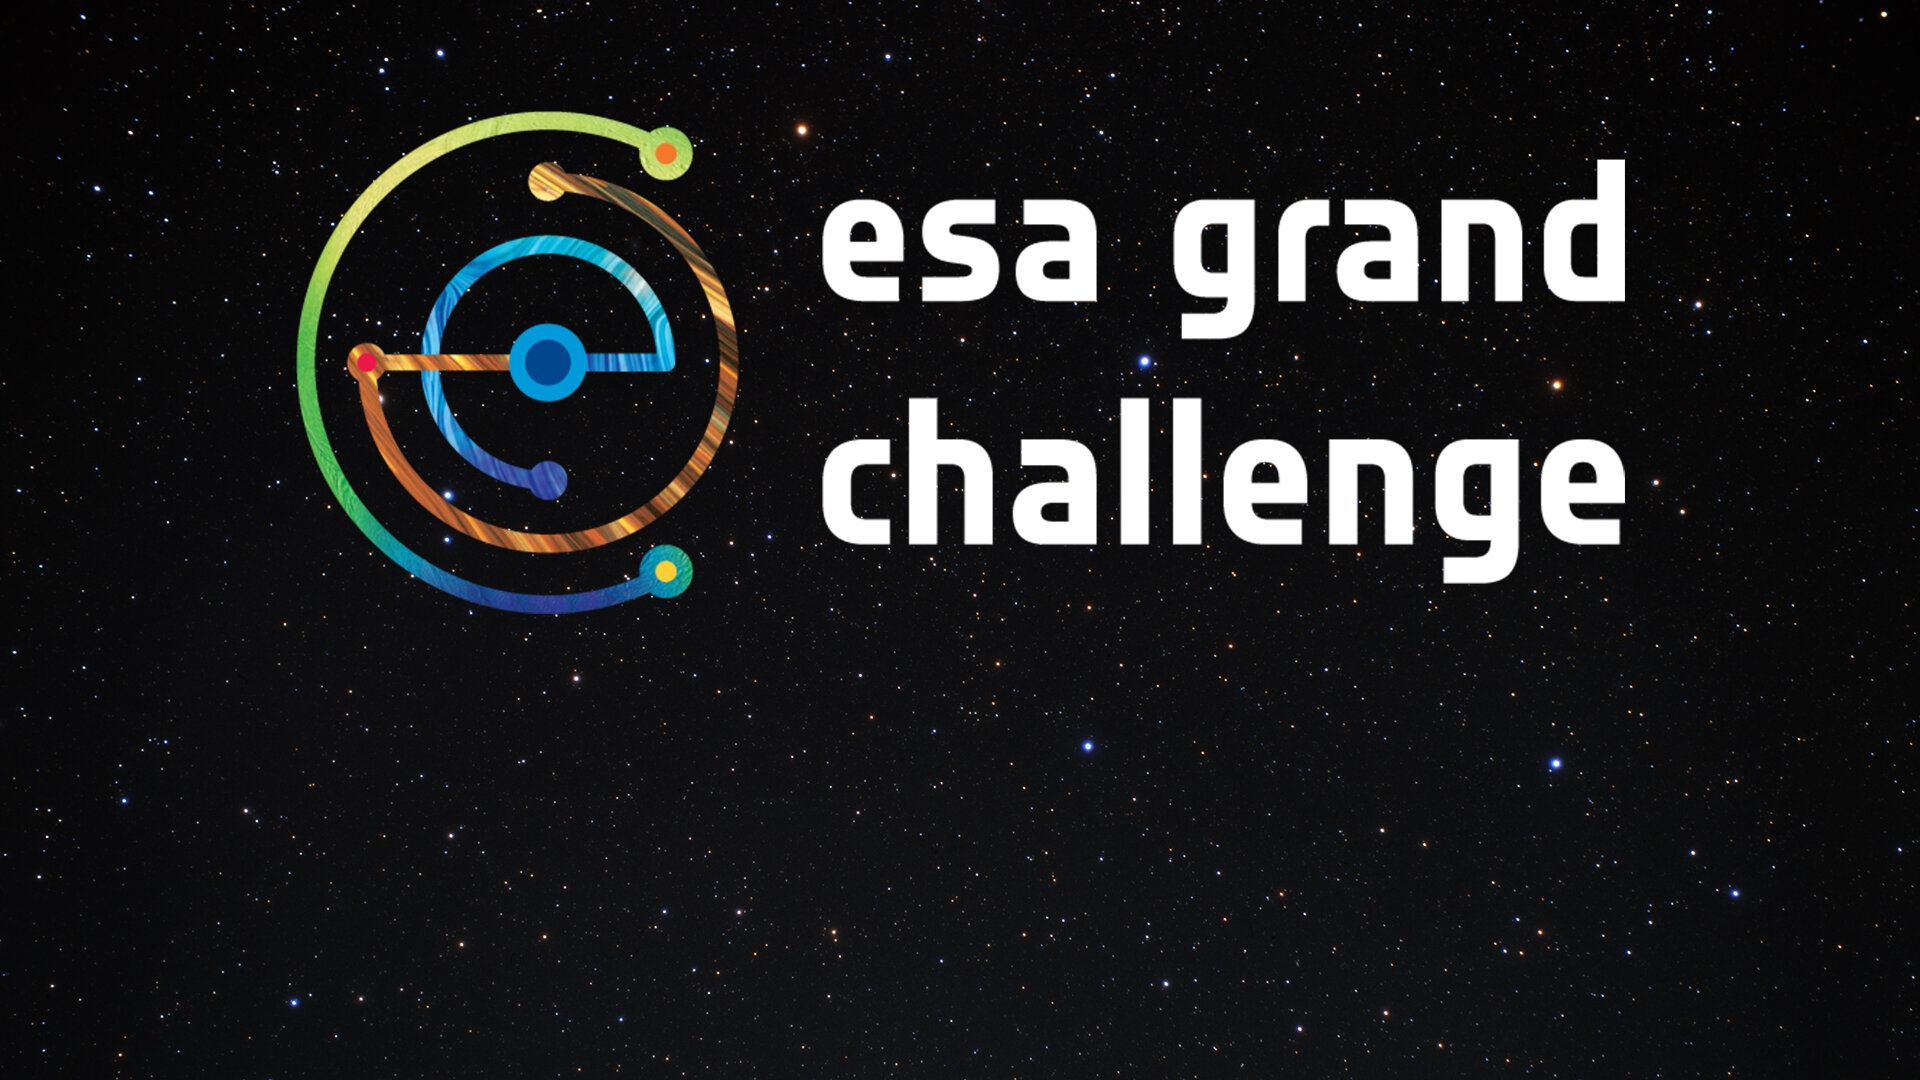 Die Grand Challenge Initiative der ESA: Raumfahrt-Experten und Vertreter aus Wirtschaft und Wissenschaft treffen sich zu interdisziplinärem Erfahrungsaustausch